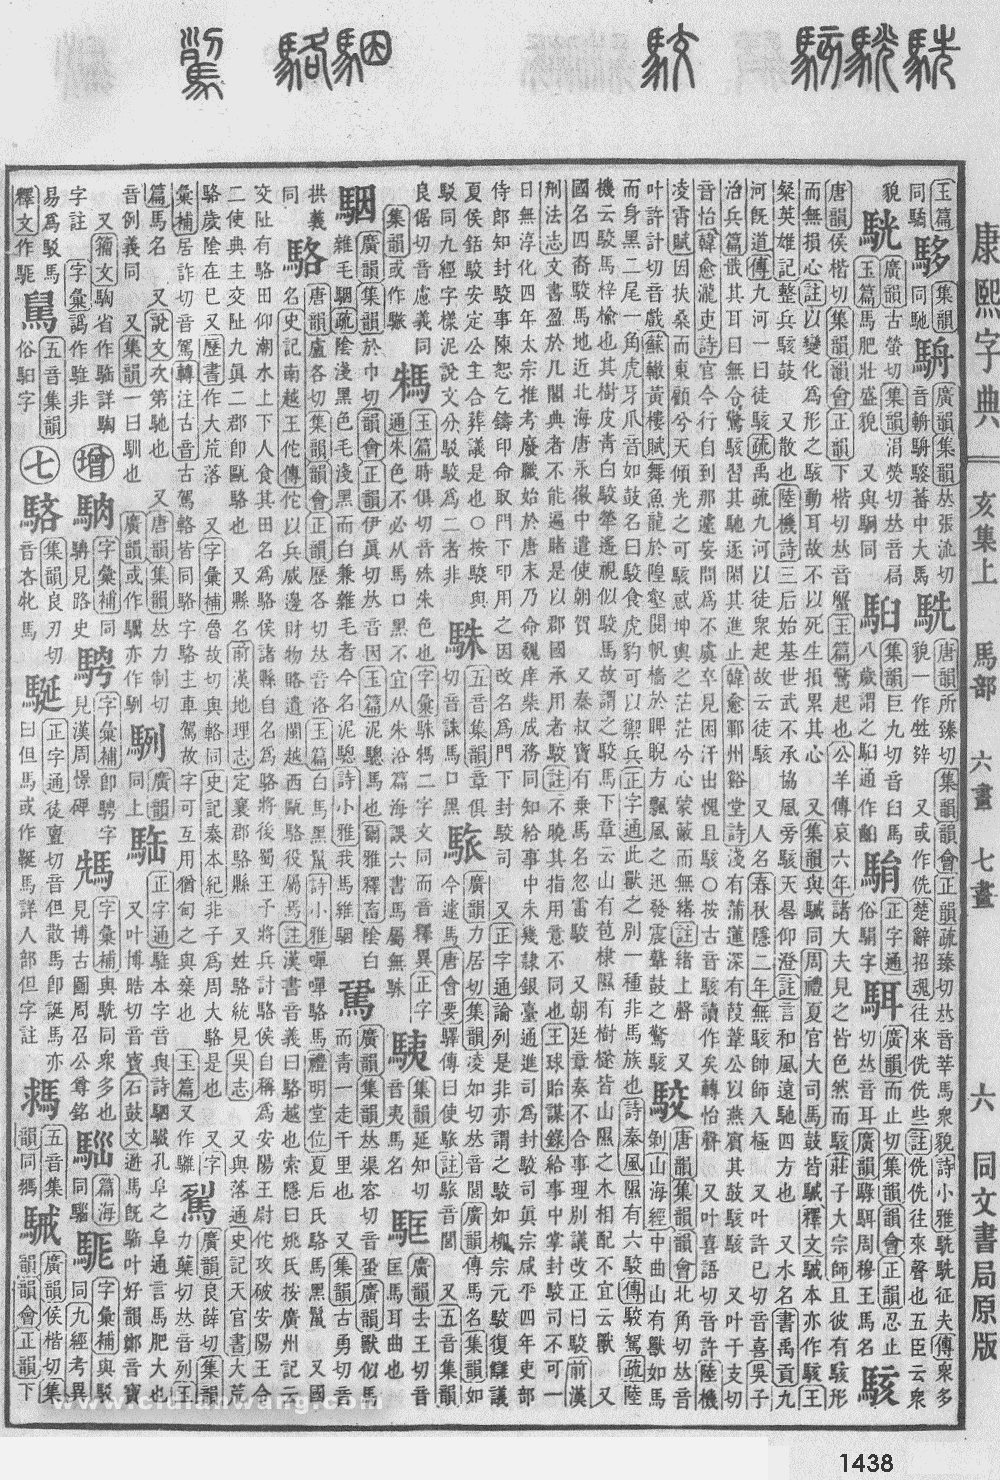 康熙字典掃描版第1438頁